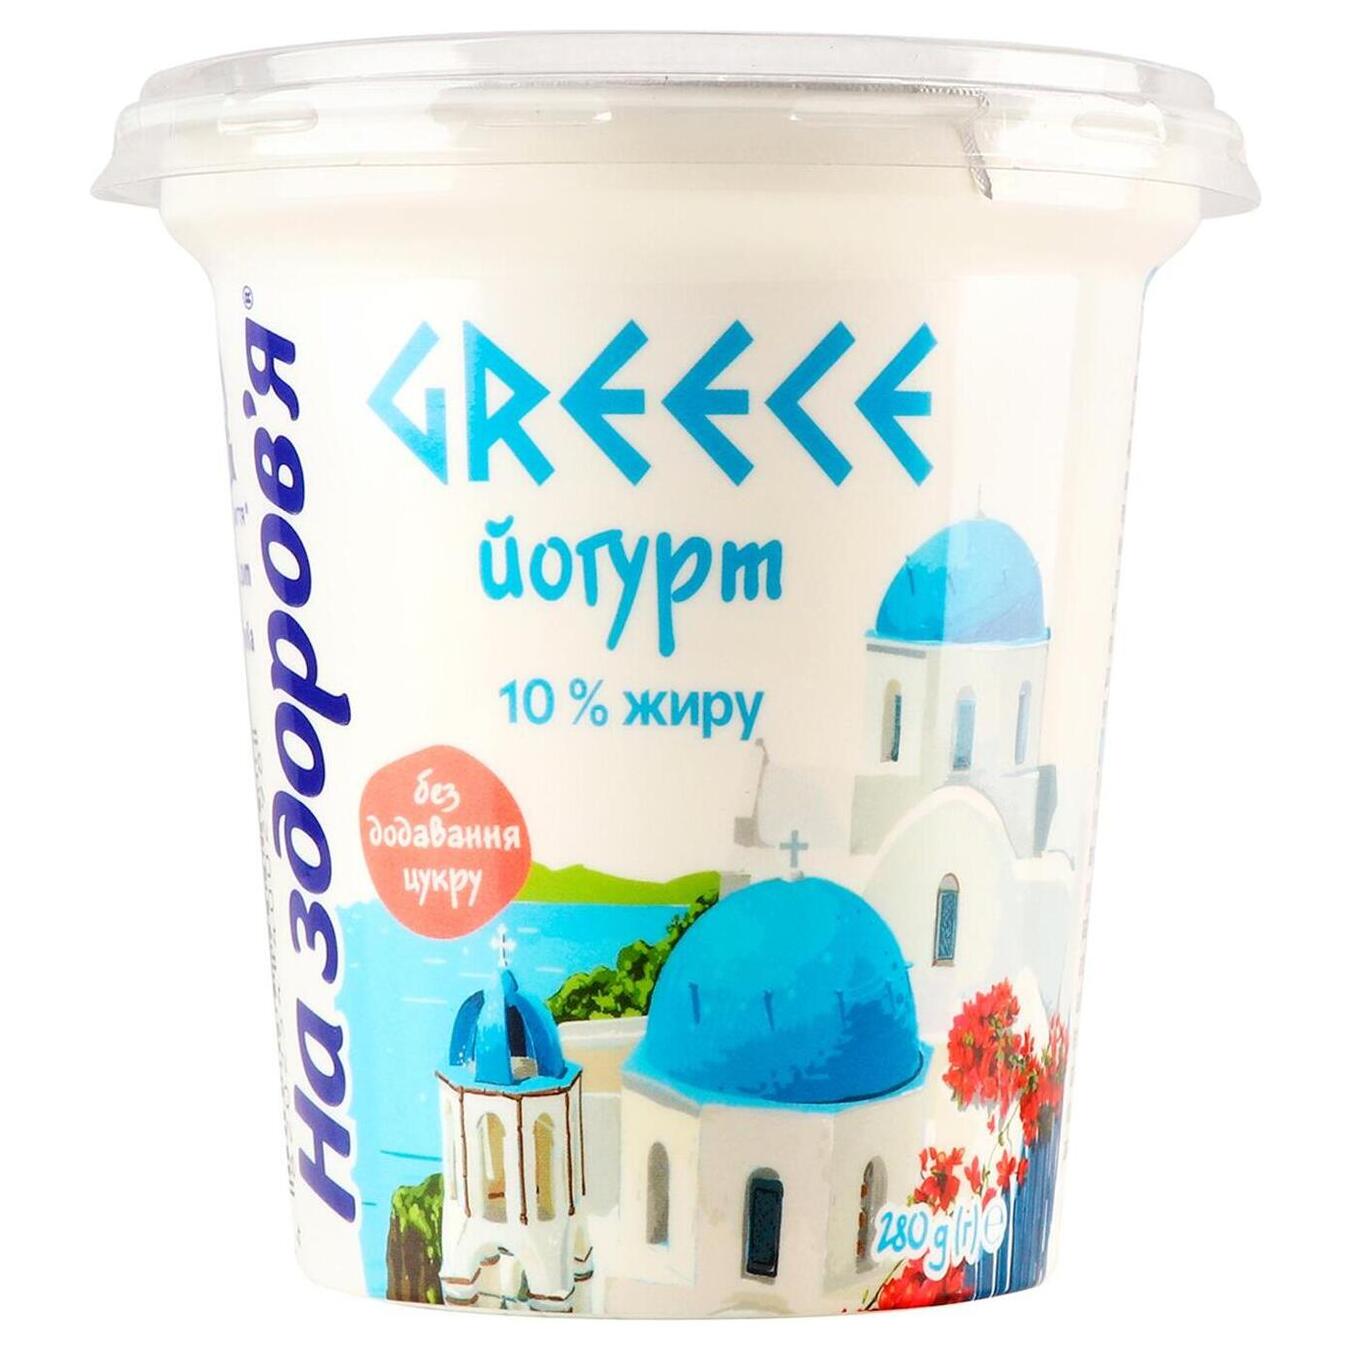 Greek yogurt for health 10% 280g